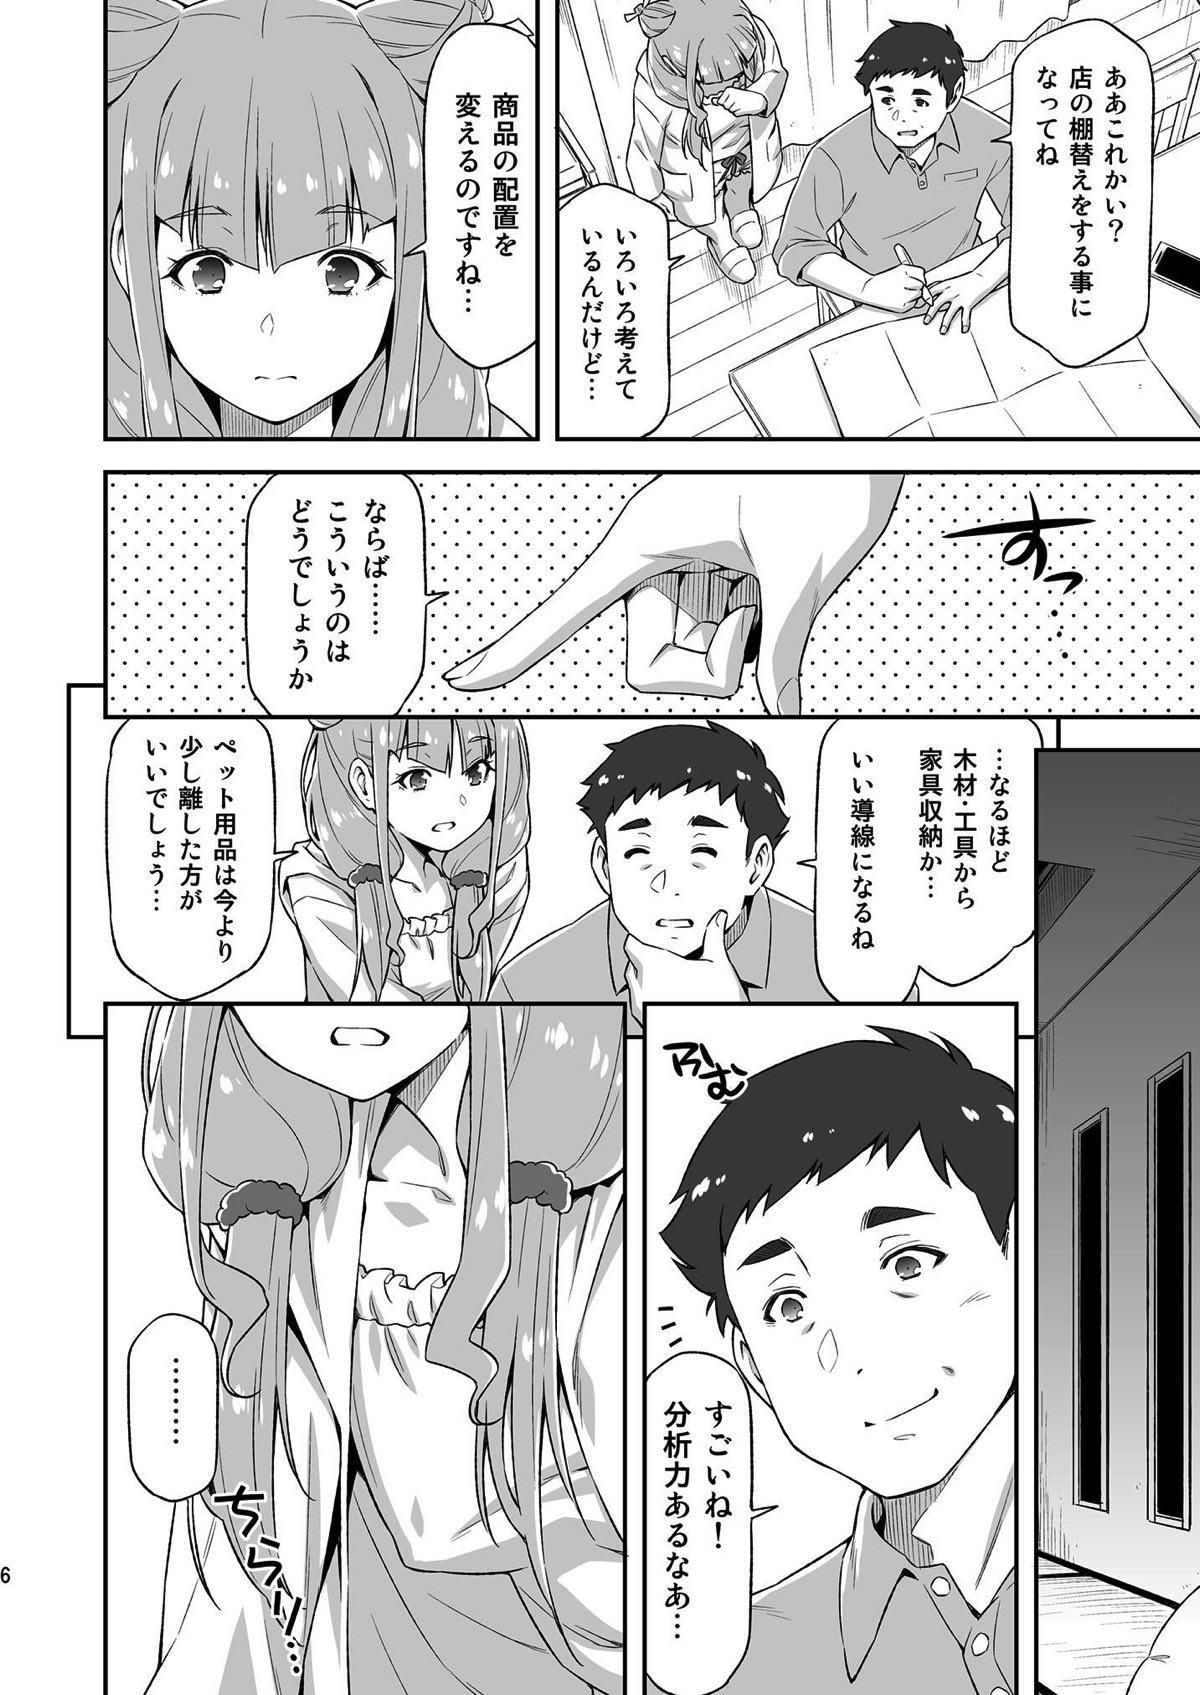 Morrita Ruru ga Yonaka ni Totsuzen Semattekita node. - Hugtto precure Couples - Page 5